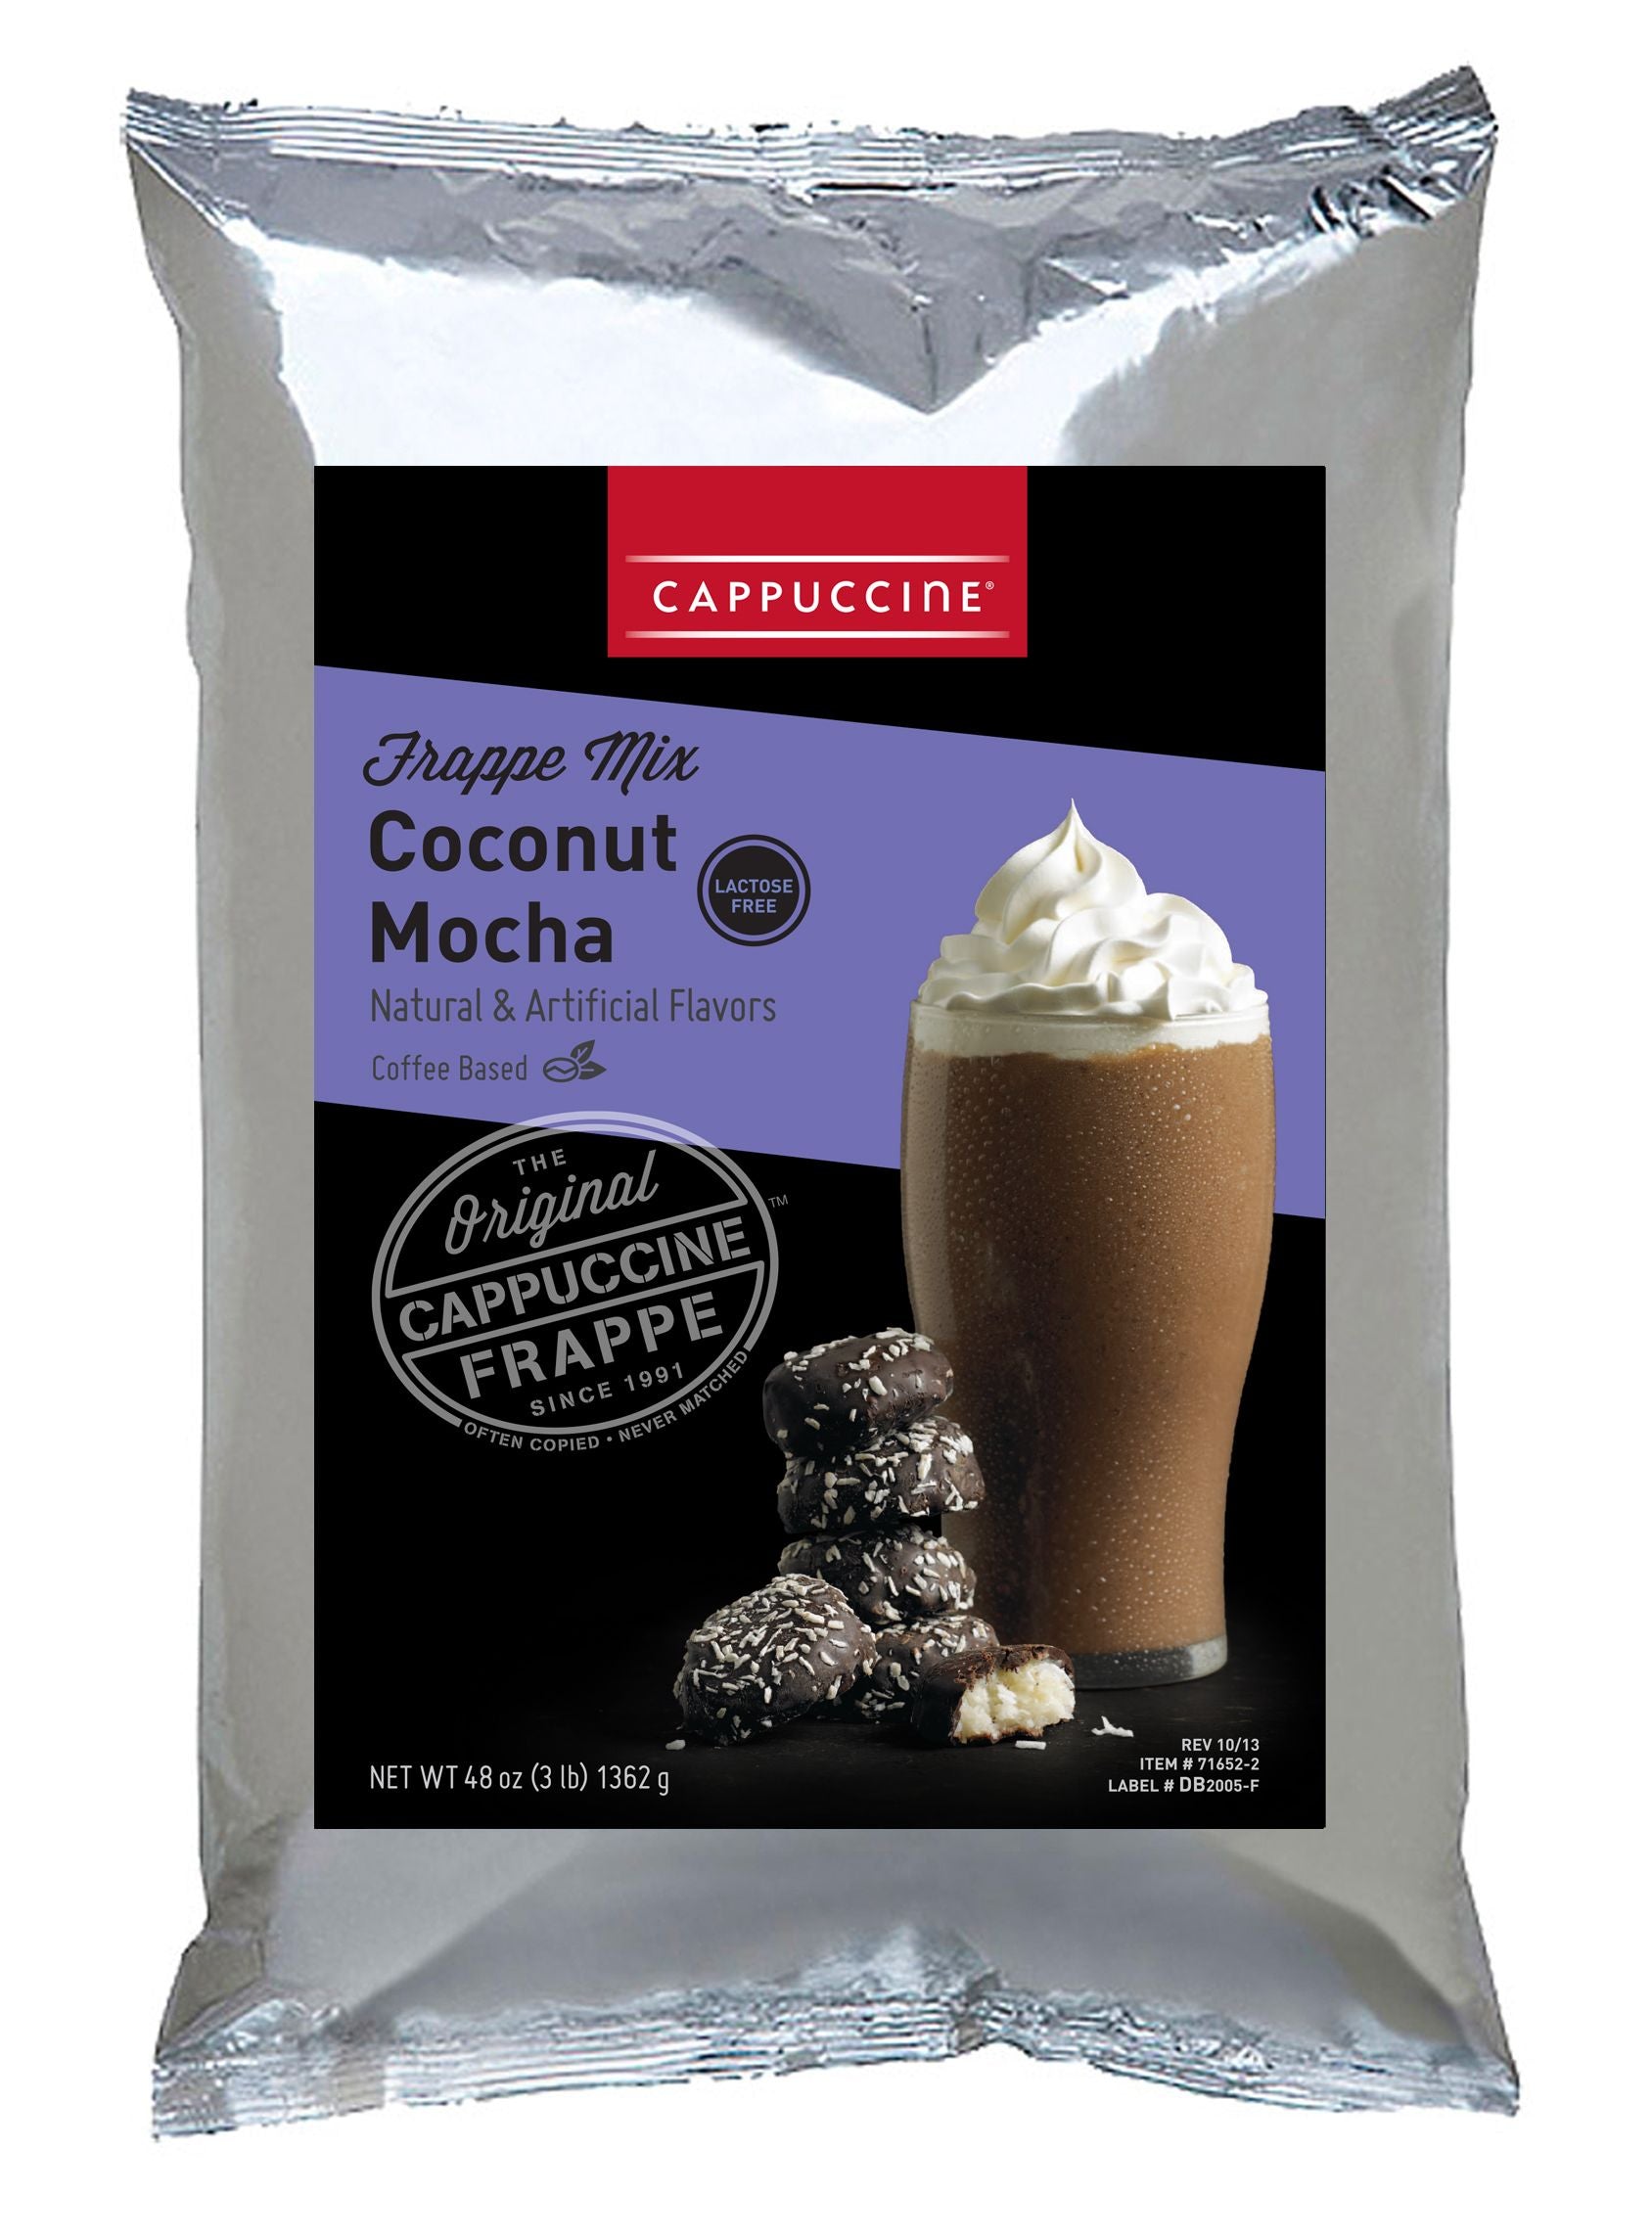 Cappuccine Coffee Frappe Mix - 3 lb. Bulk Bag: Coconut Mocha